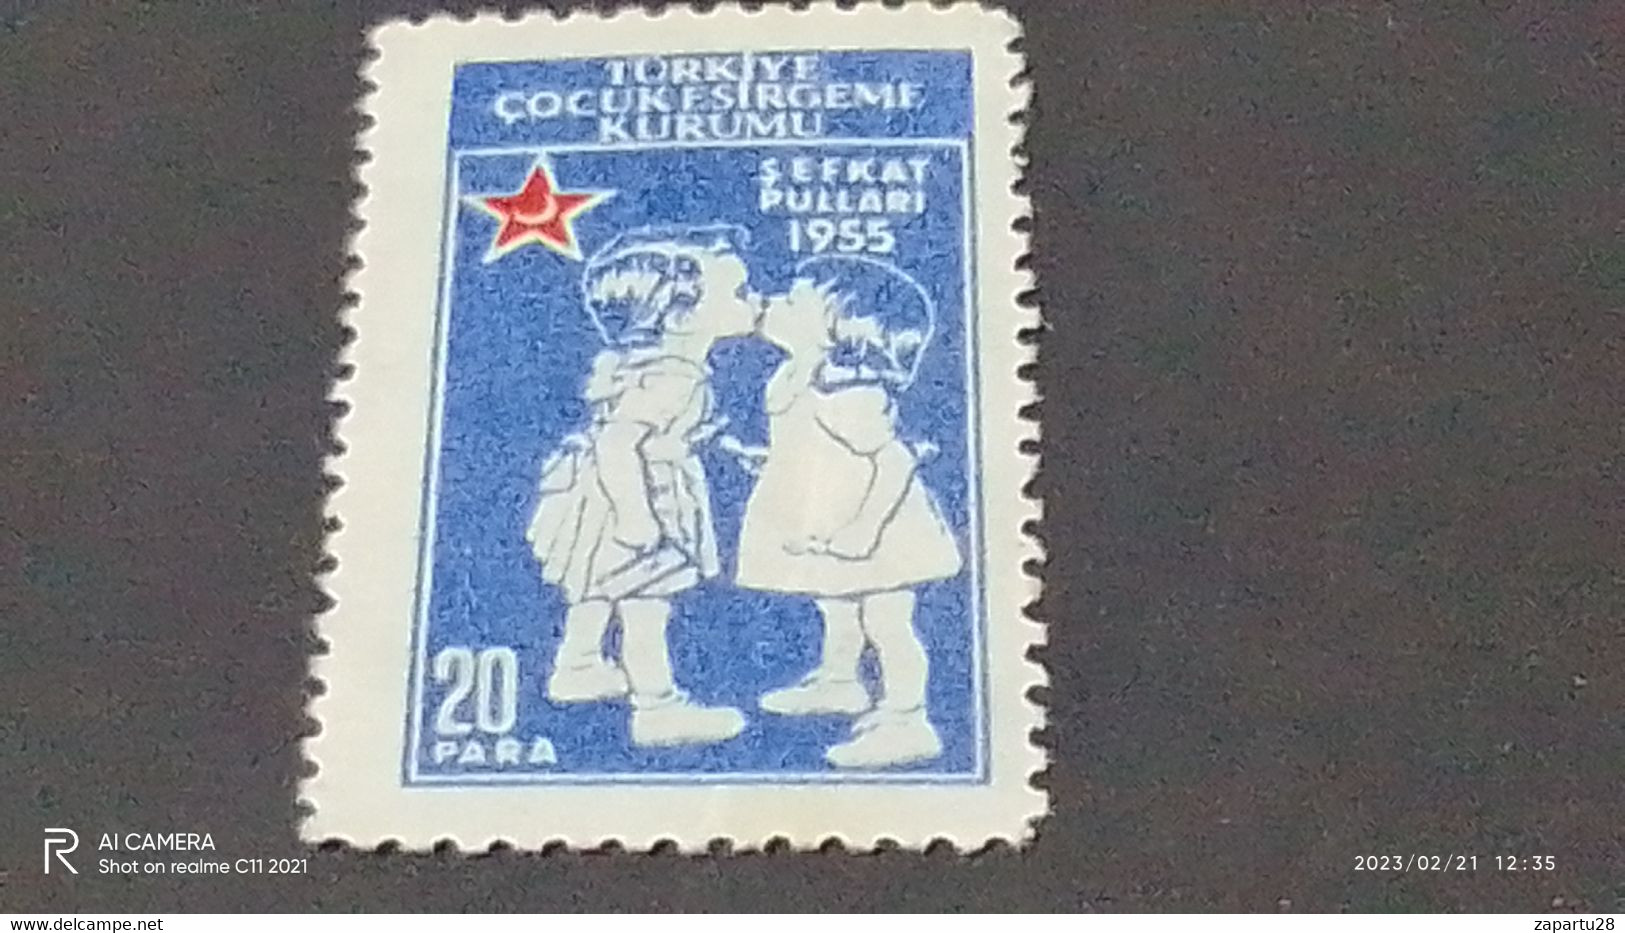 TÜRKEY--YARDIM PULLARI- 1950-60   ÇOCUK ESİRGEME 20P  DAMGASIZ - Charity Stamps